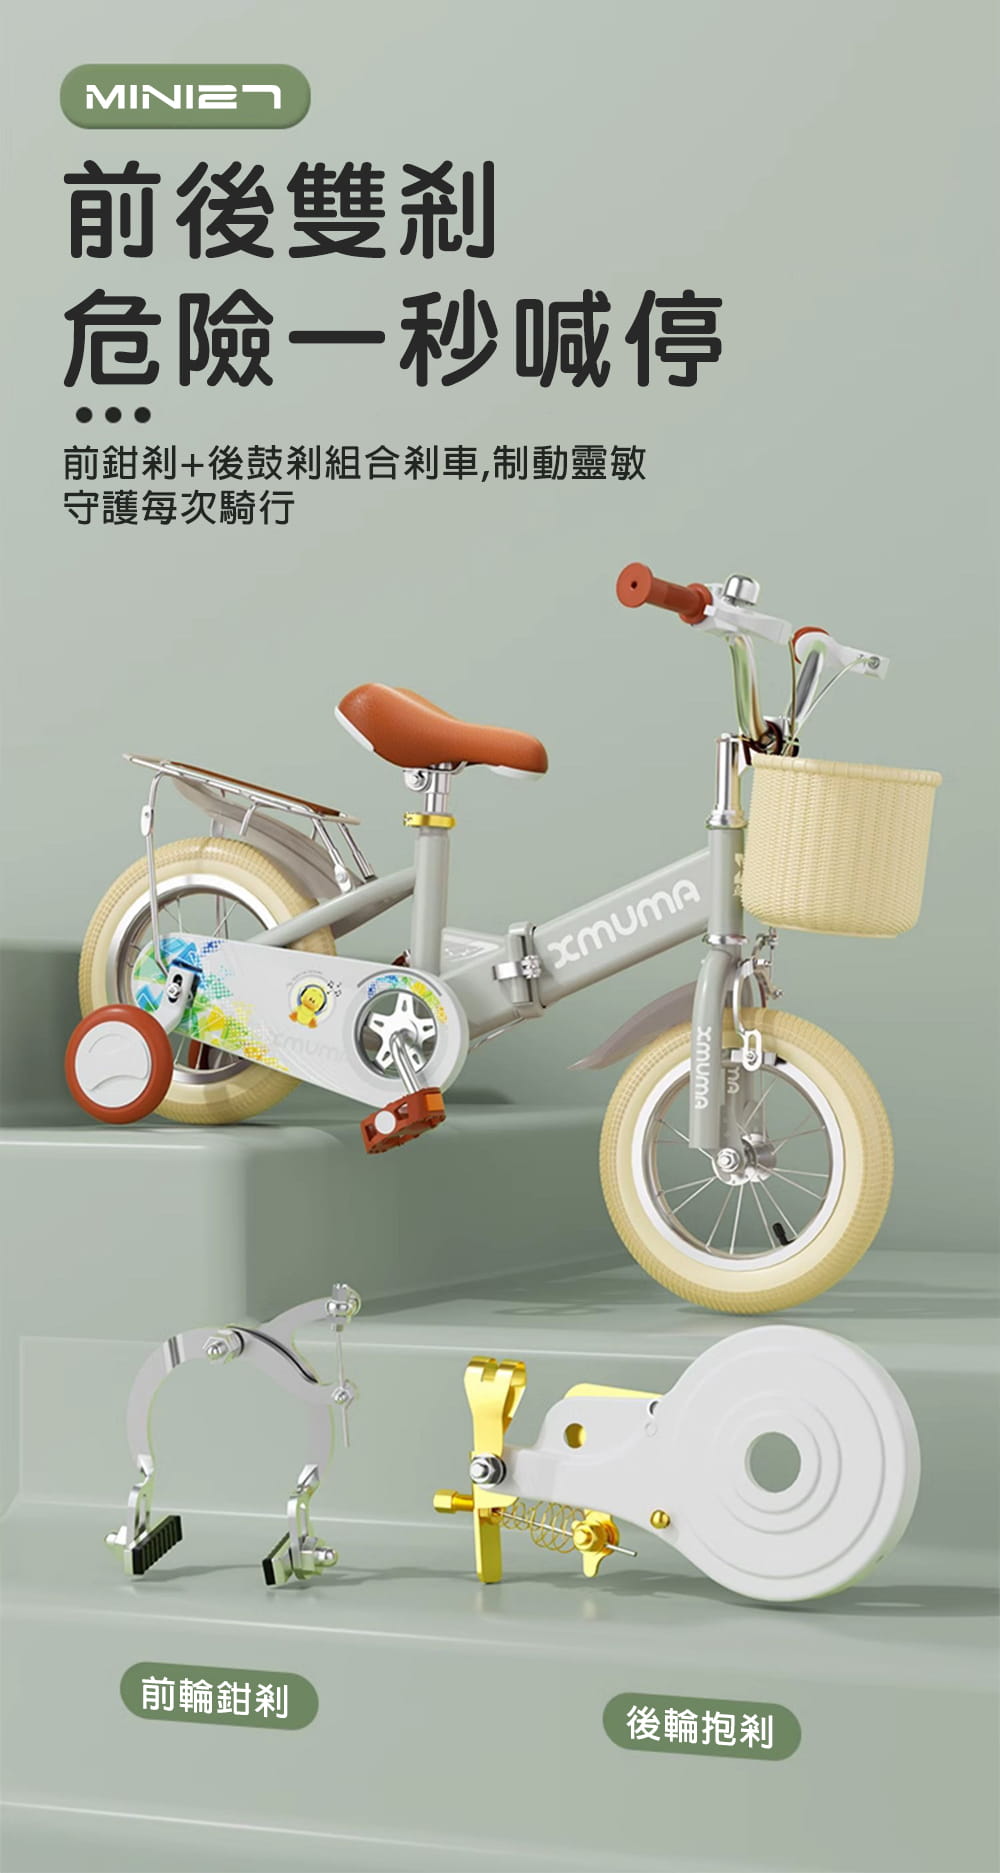 BIKEONE MINI27 兒童折疊自行車18吋男女寶寶小孩摺疊腳踏單車後貨架版款顏色可愛清新 9